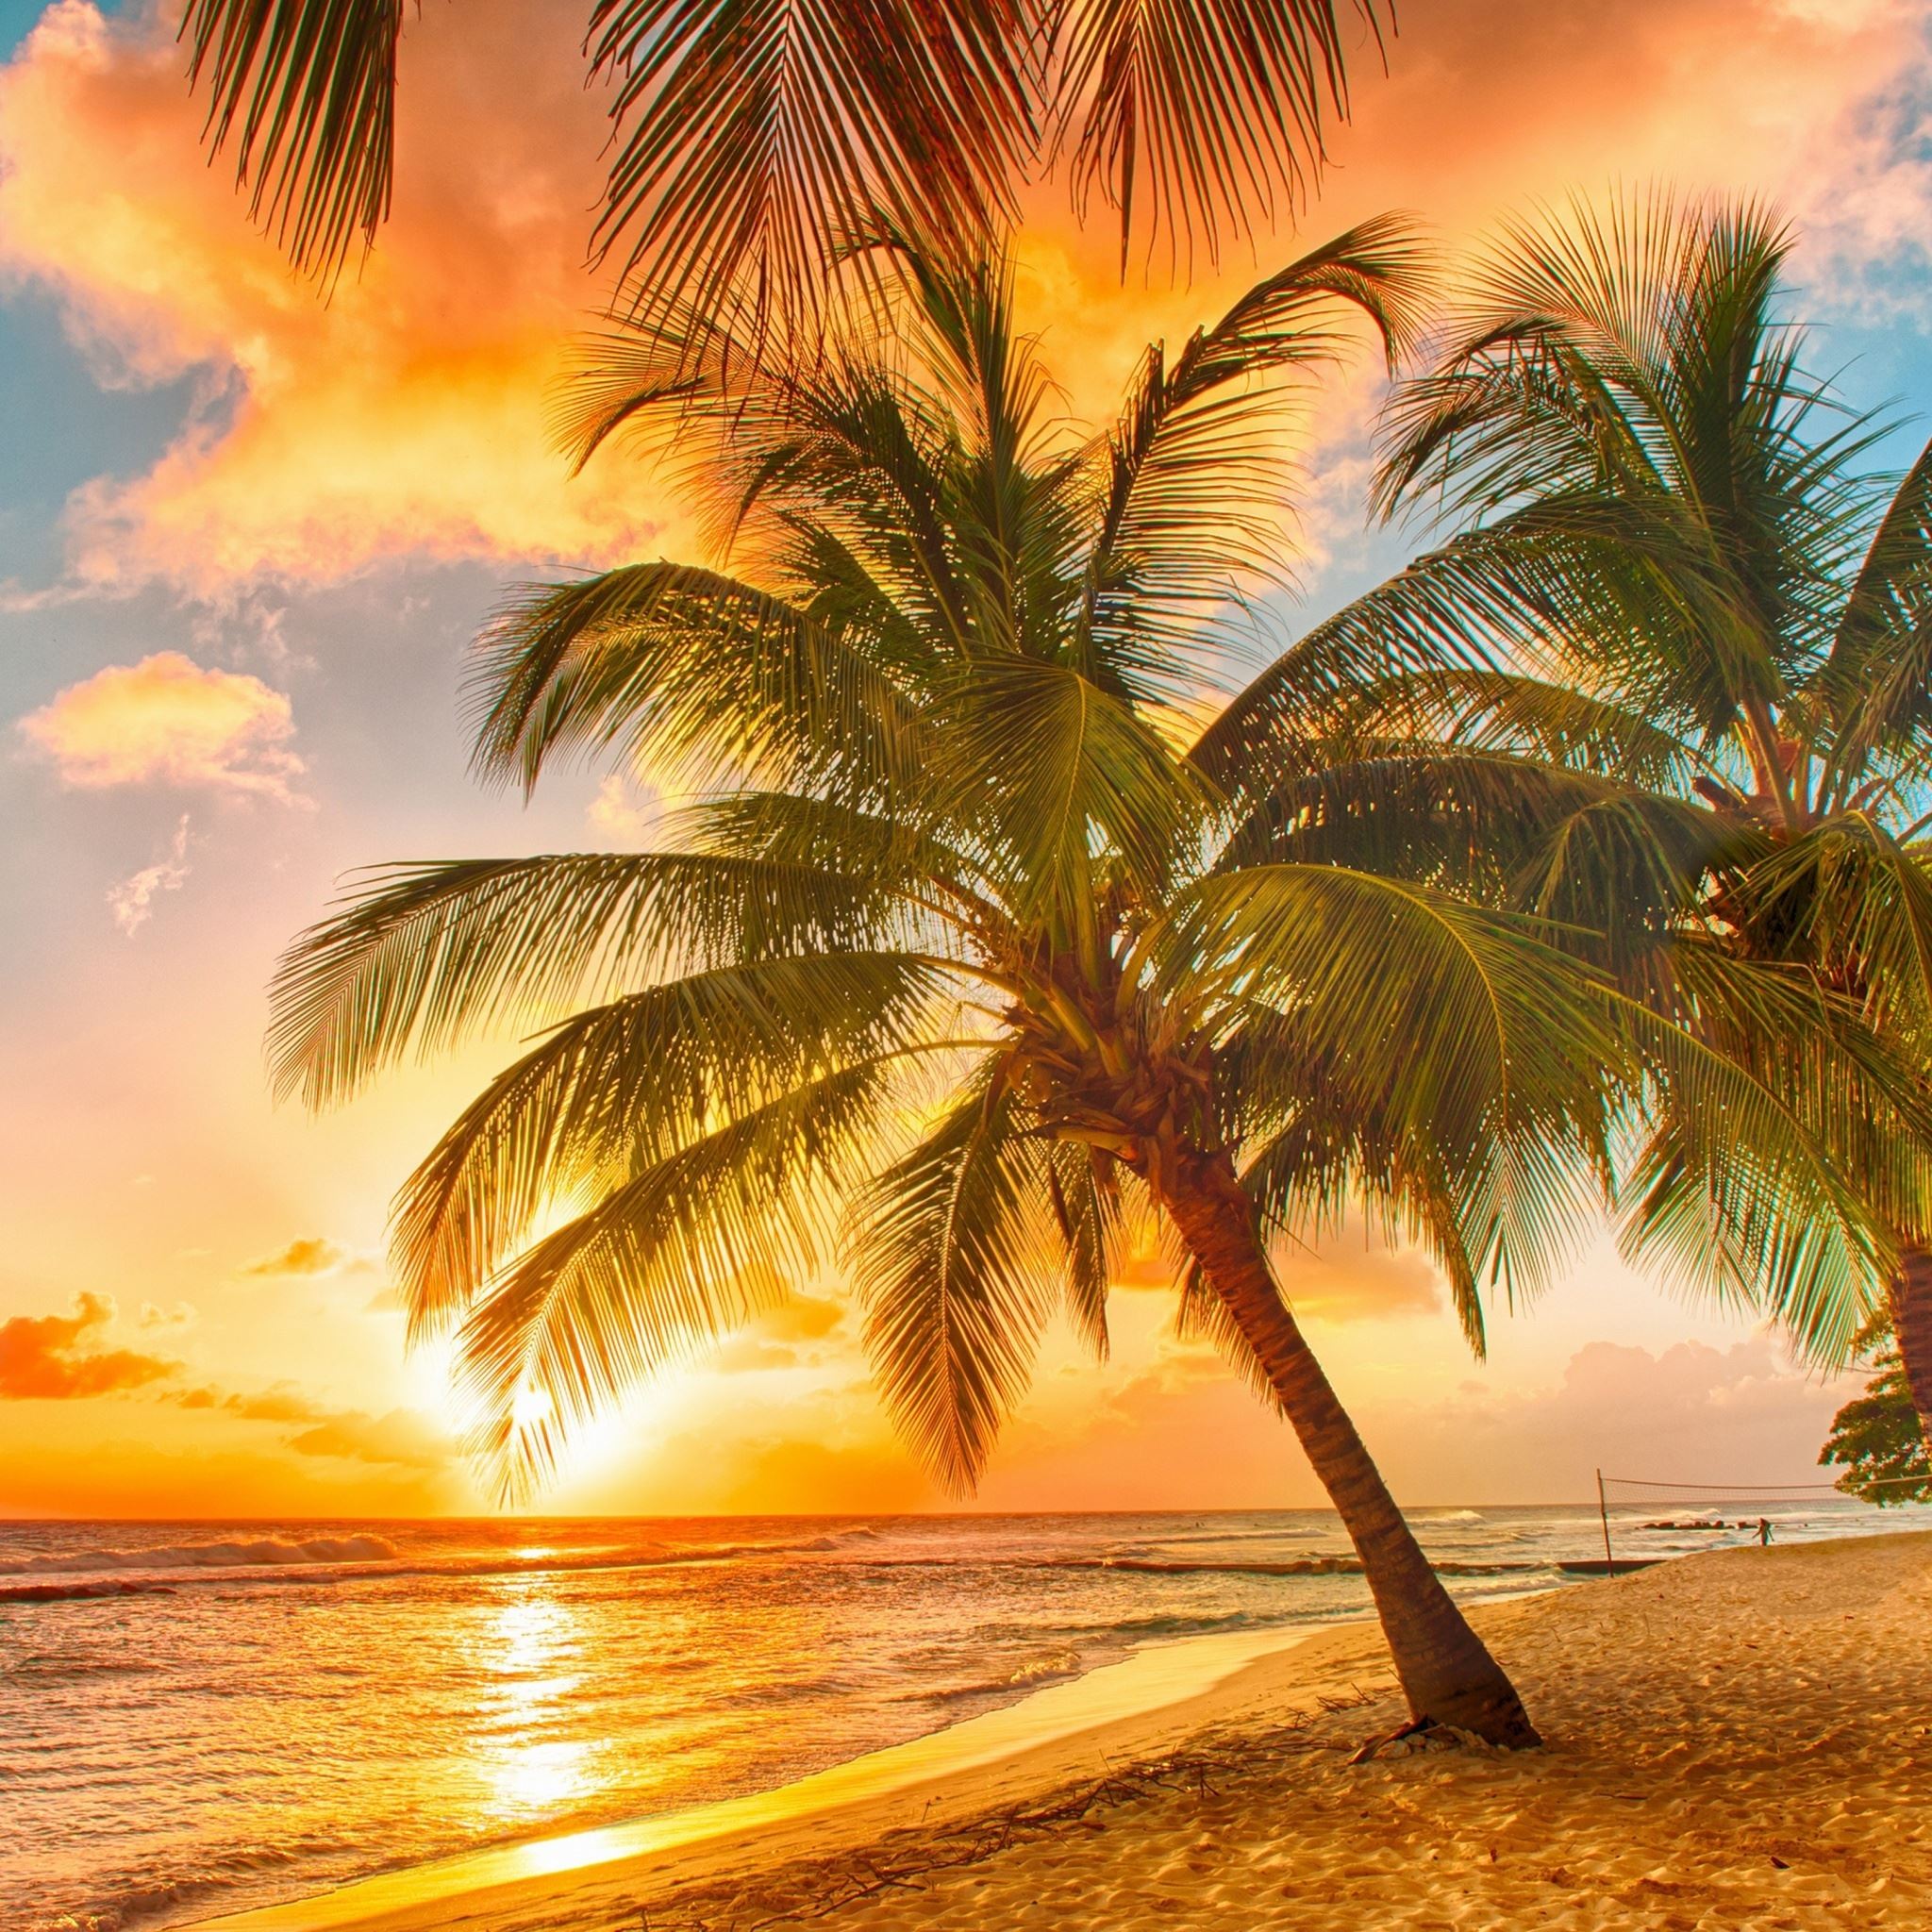 Palm Tree Tropical Beach iPad Air wallpaper 